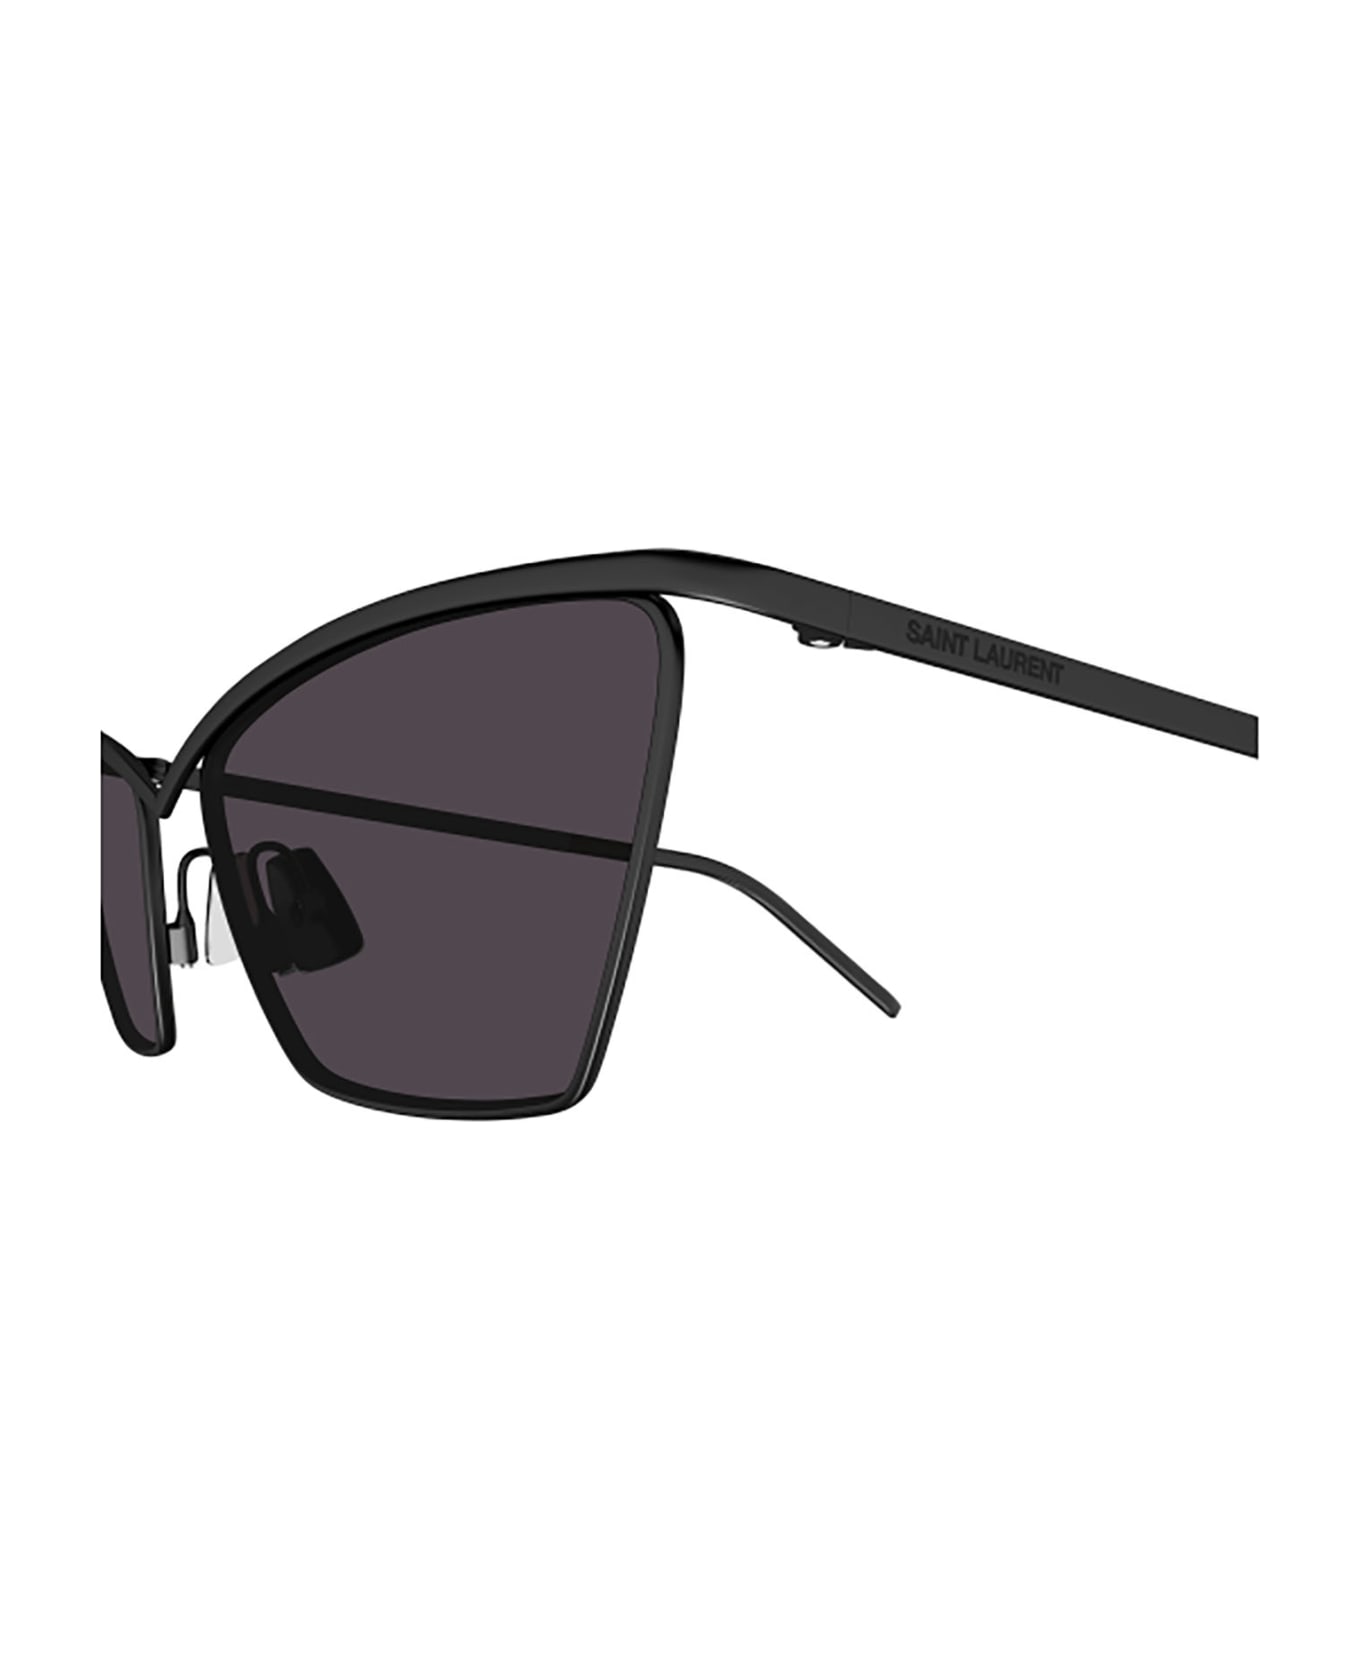 Saint Laurent Eyewear SL 637 Sunglasses - Black Black Black サングラス